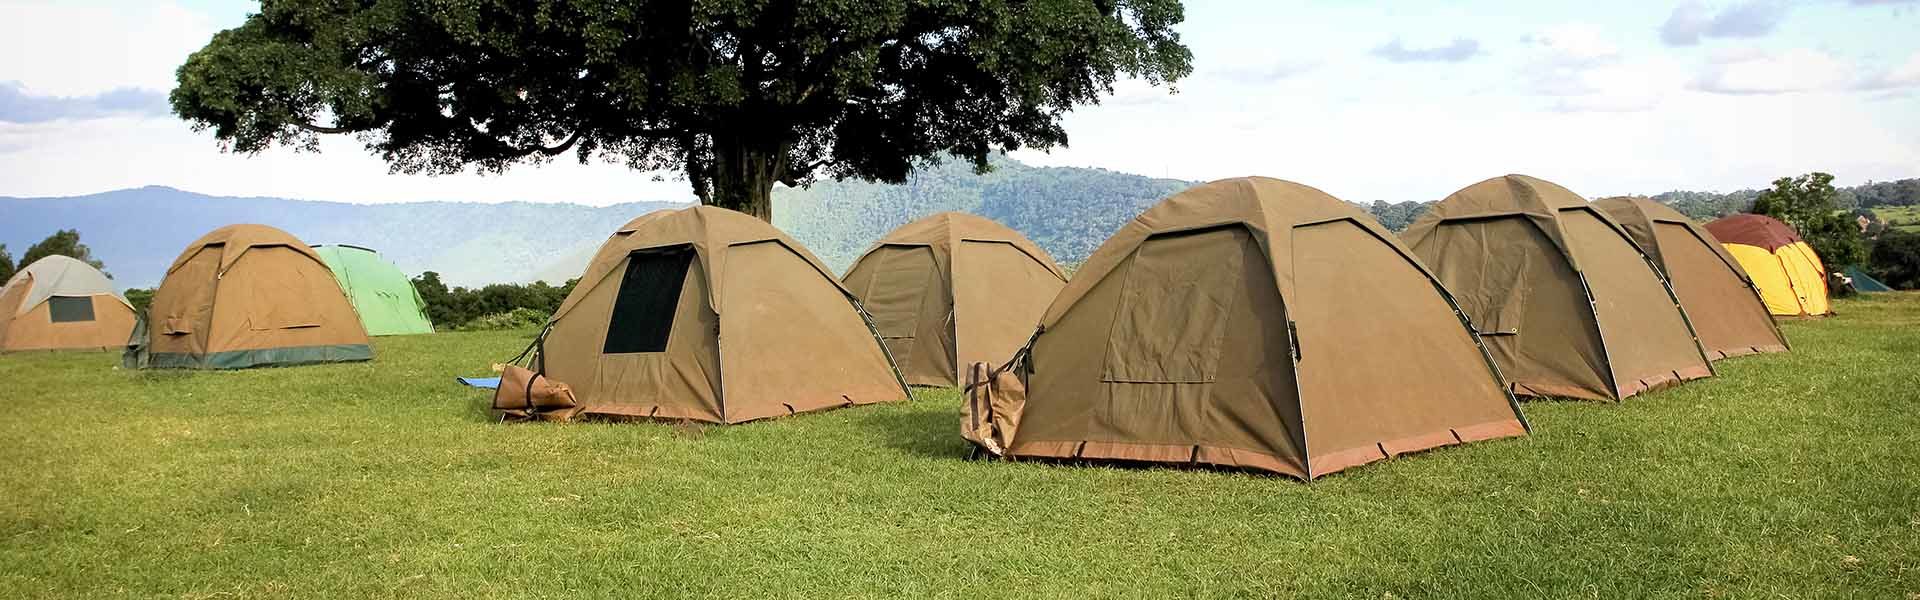 Kilimanjaro Tents & Camps